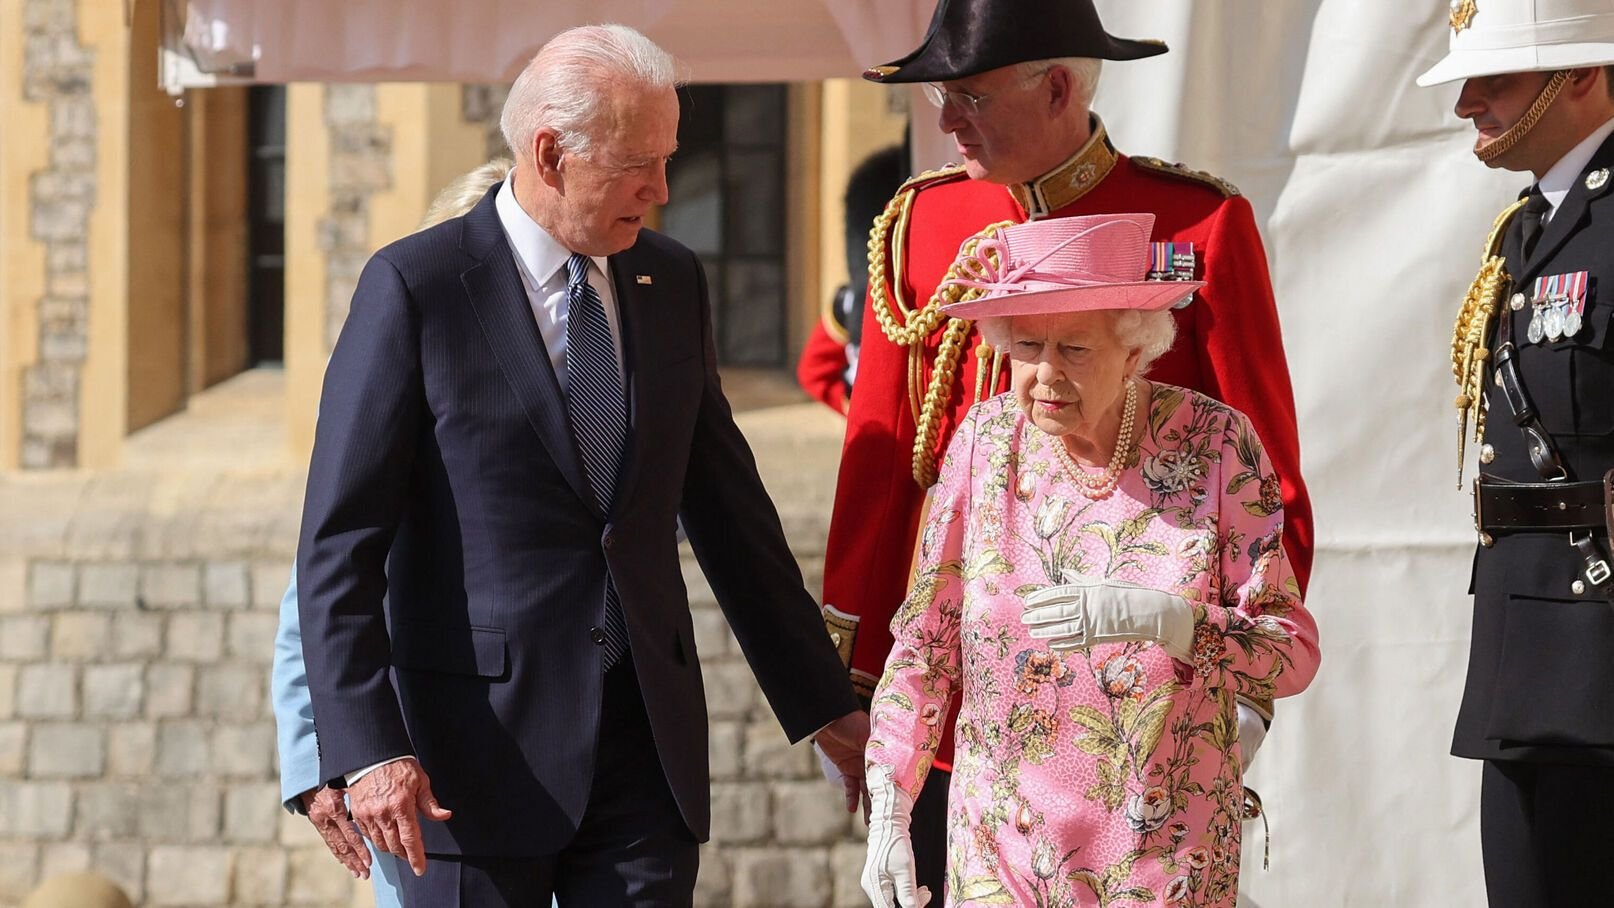 ԱՄՆ նախագահ Ջո Բայդենը կմասնակցի Մեծ Բրիտանիայի թագուհի Եղիսաբեթ II-ի հուղարկավորությանը